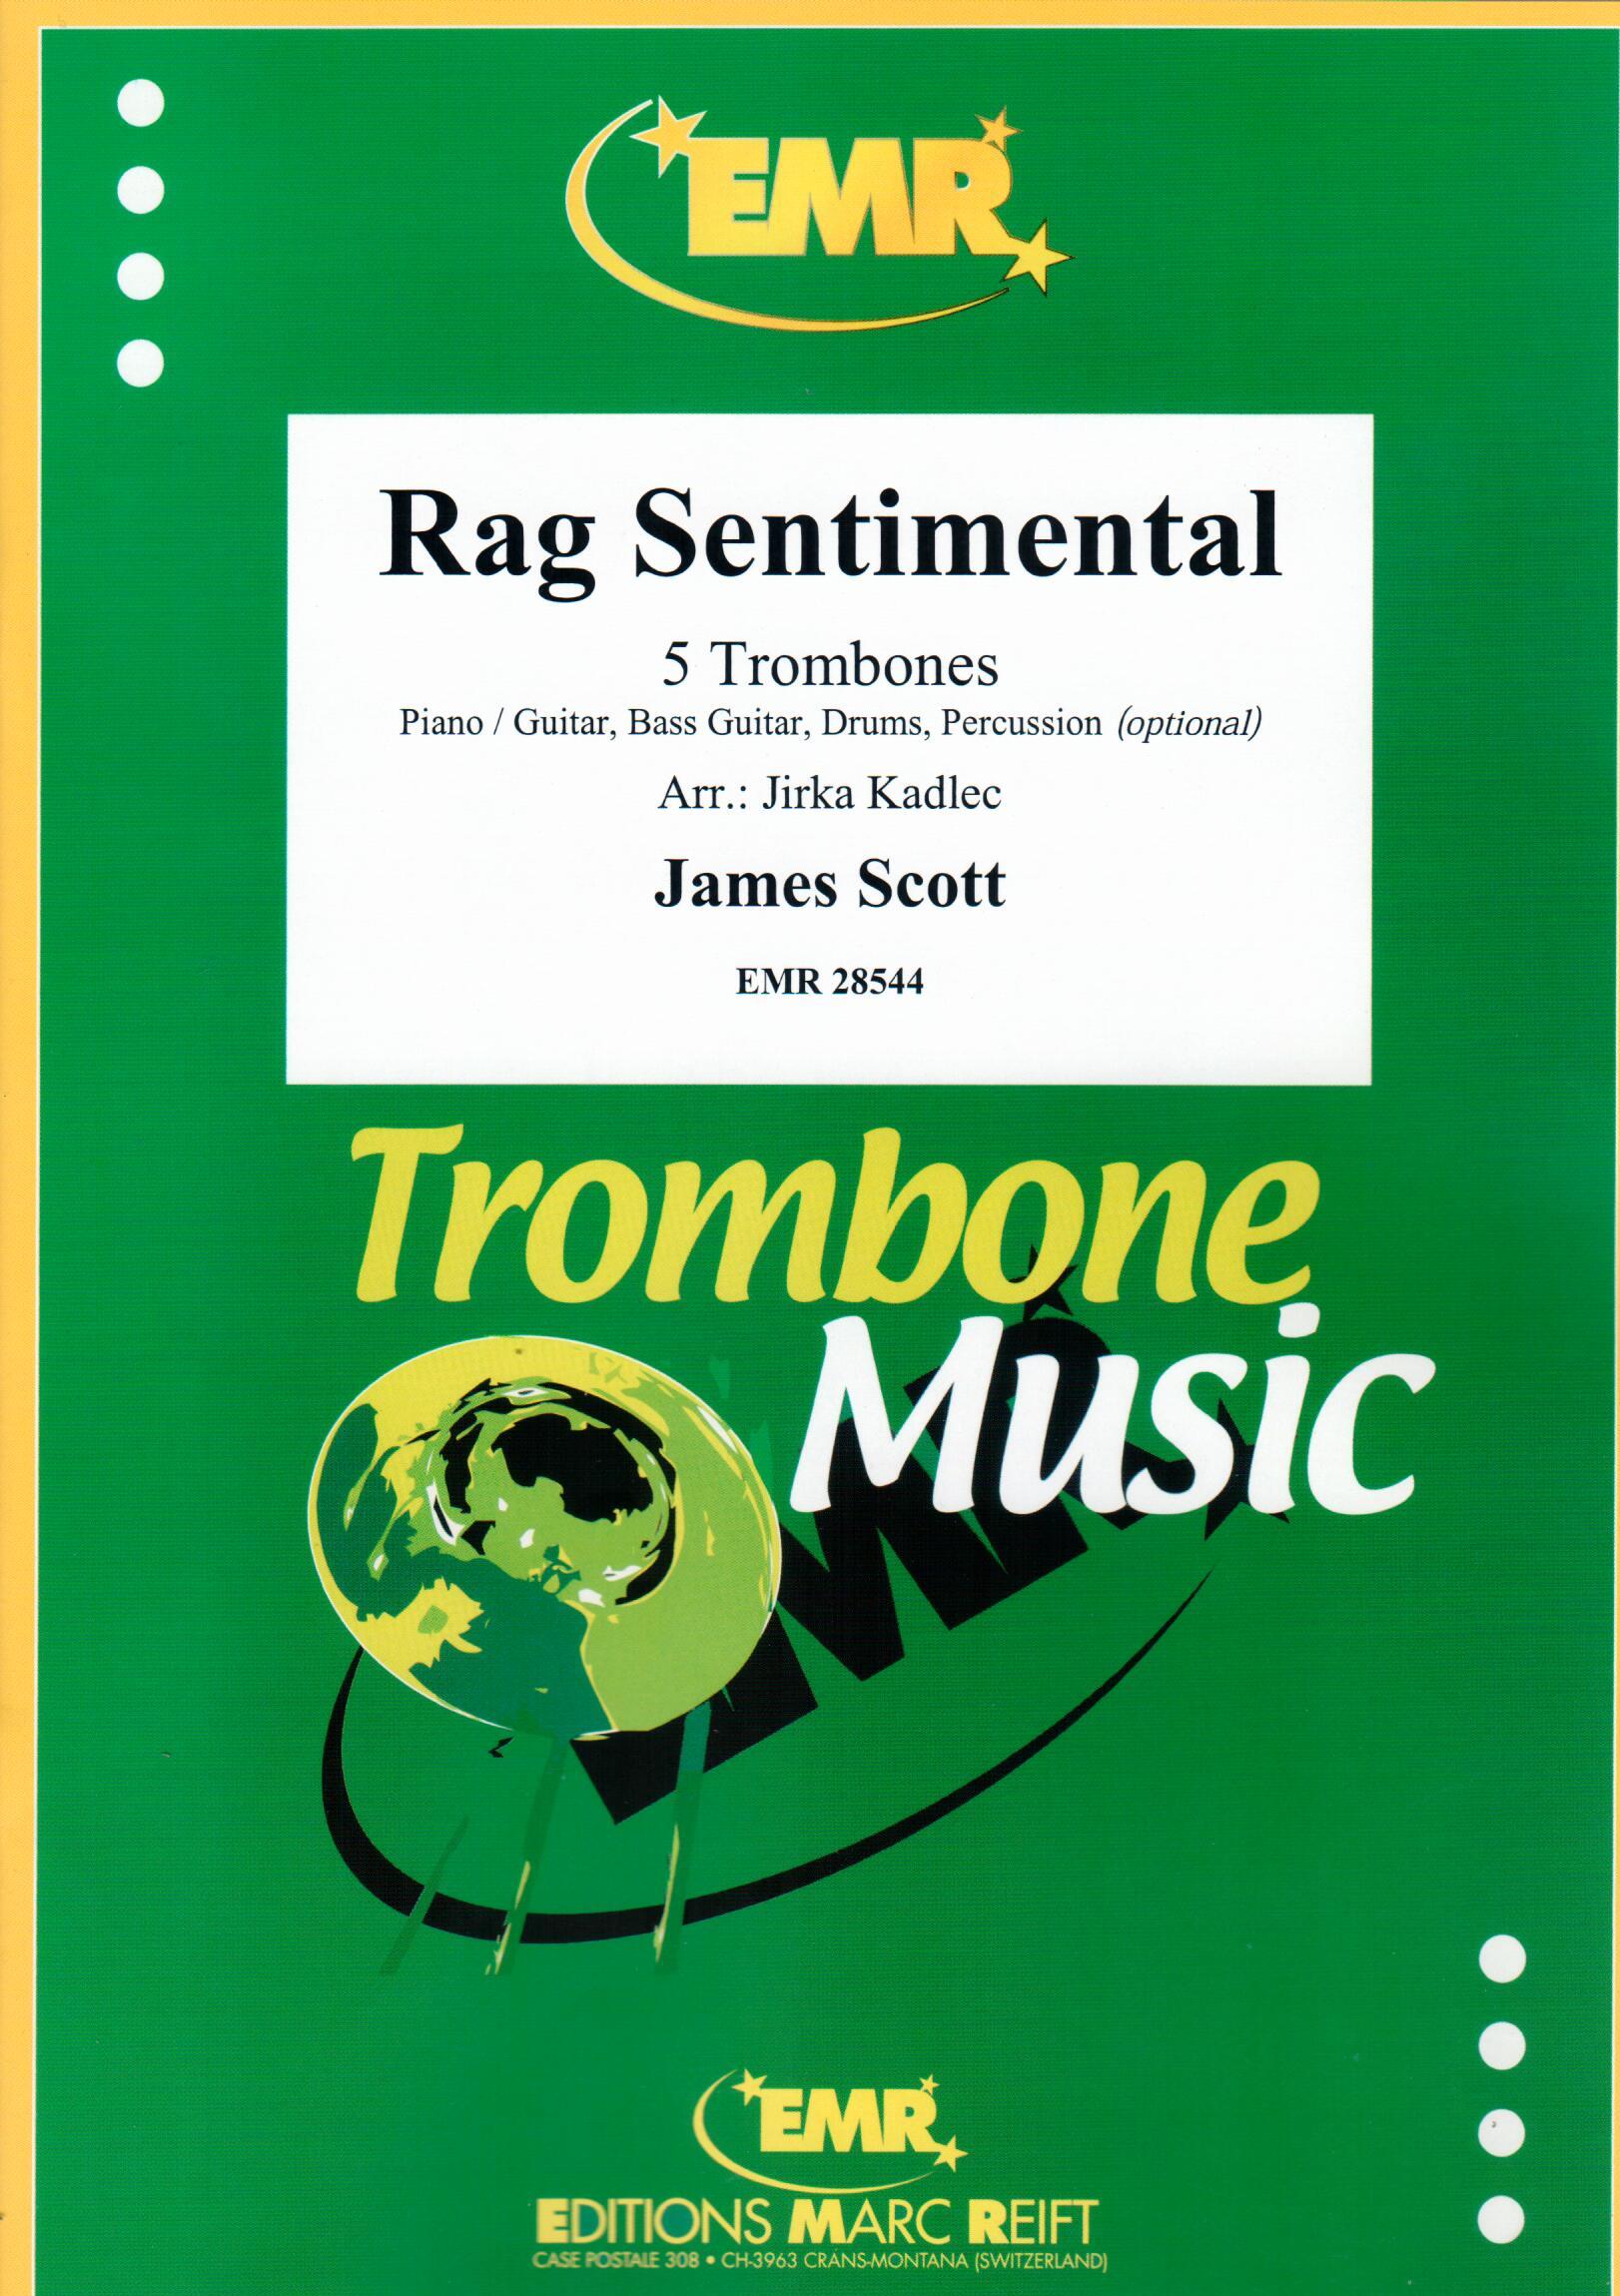 RAG SENTIMENTAL, SOLOS - Trombone